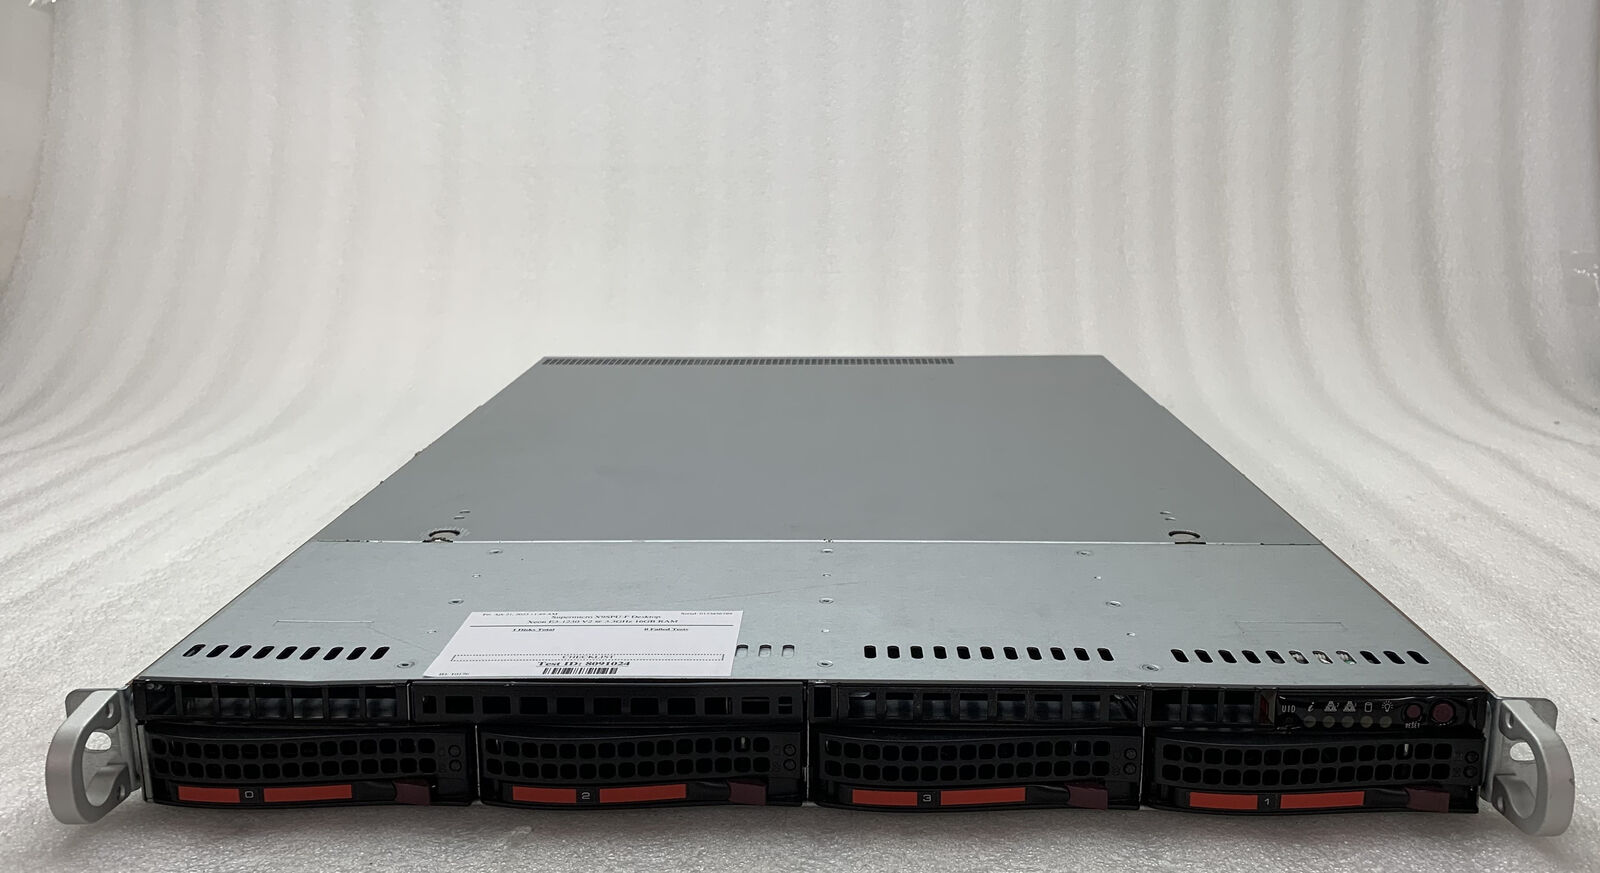 Supermicro CSE-815 X9SPU-F 1U Server Xeon E3-1230 V2 3.3GHz 16GB RAM 256GB HDD